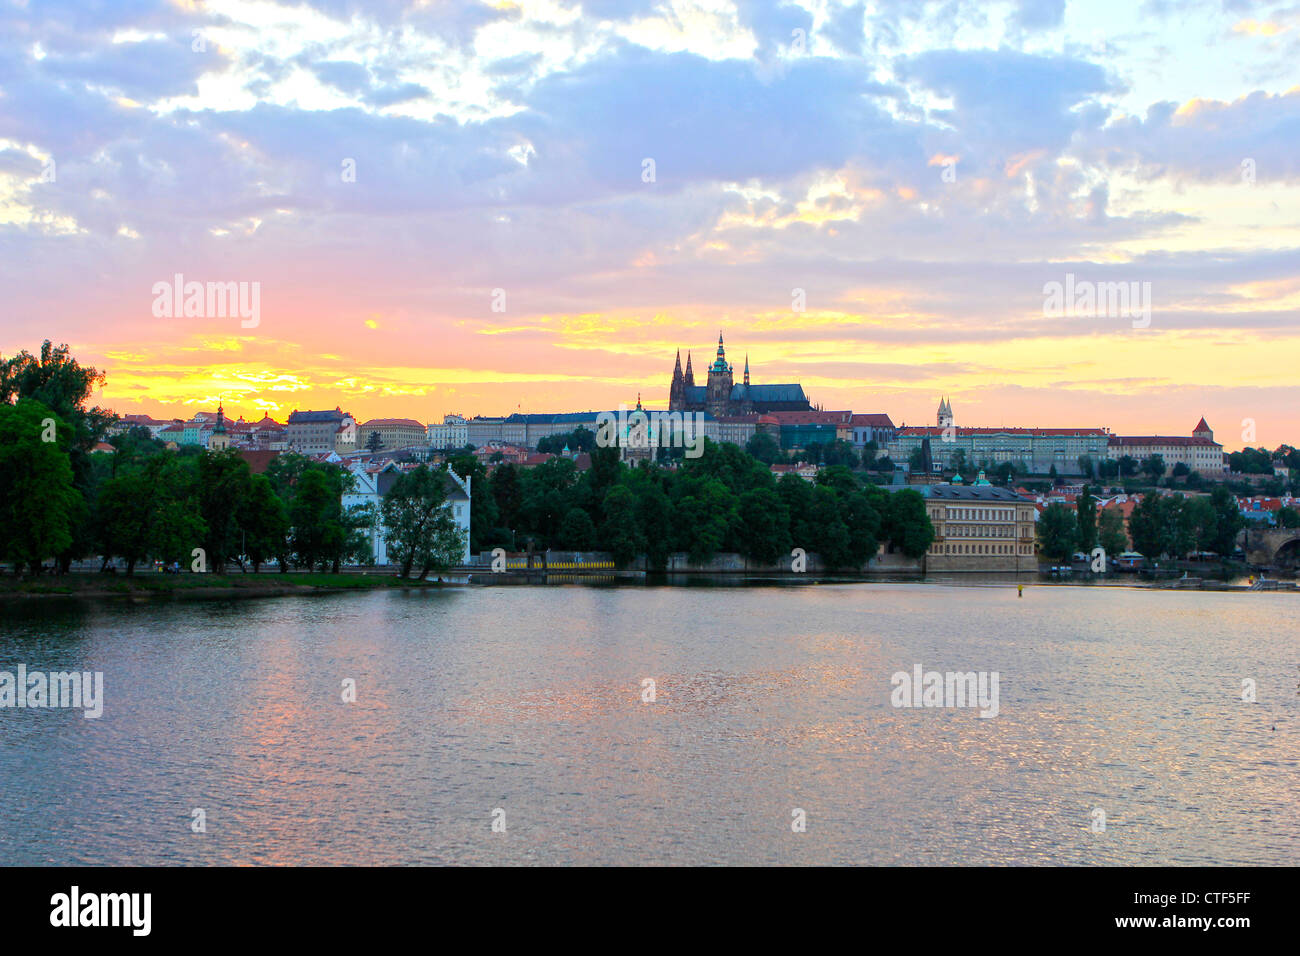 República Checa, Praga, vista del Castillo de Praga y Puente de Carlos Foto de stock